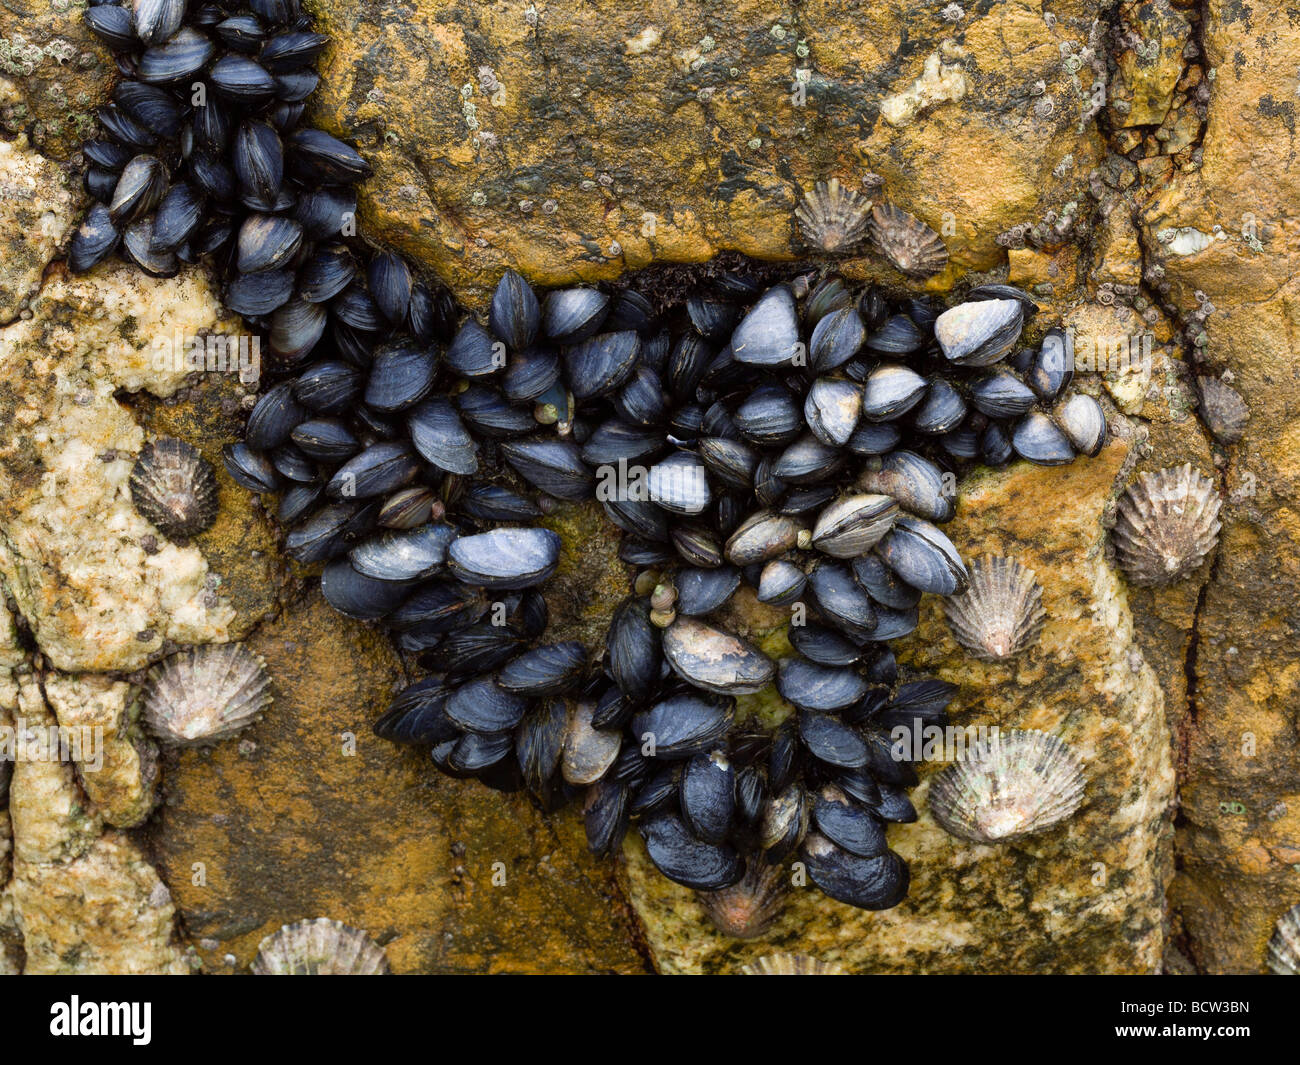 Les moules et patelles attaché à un rocher à Port Quin North Cornwall UK Banque D'Images